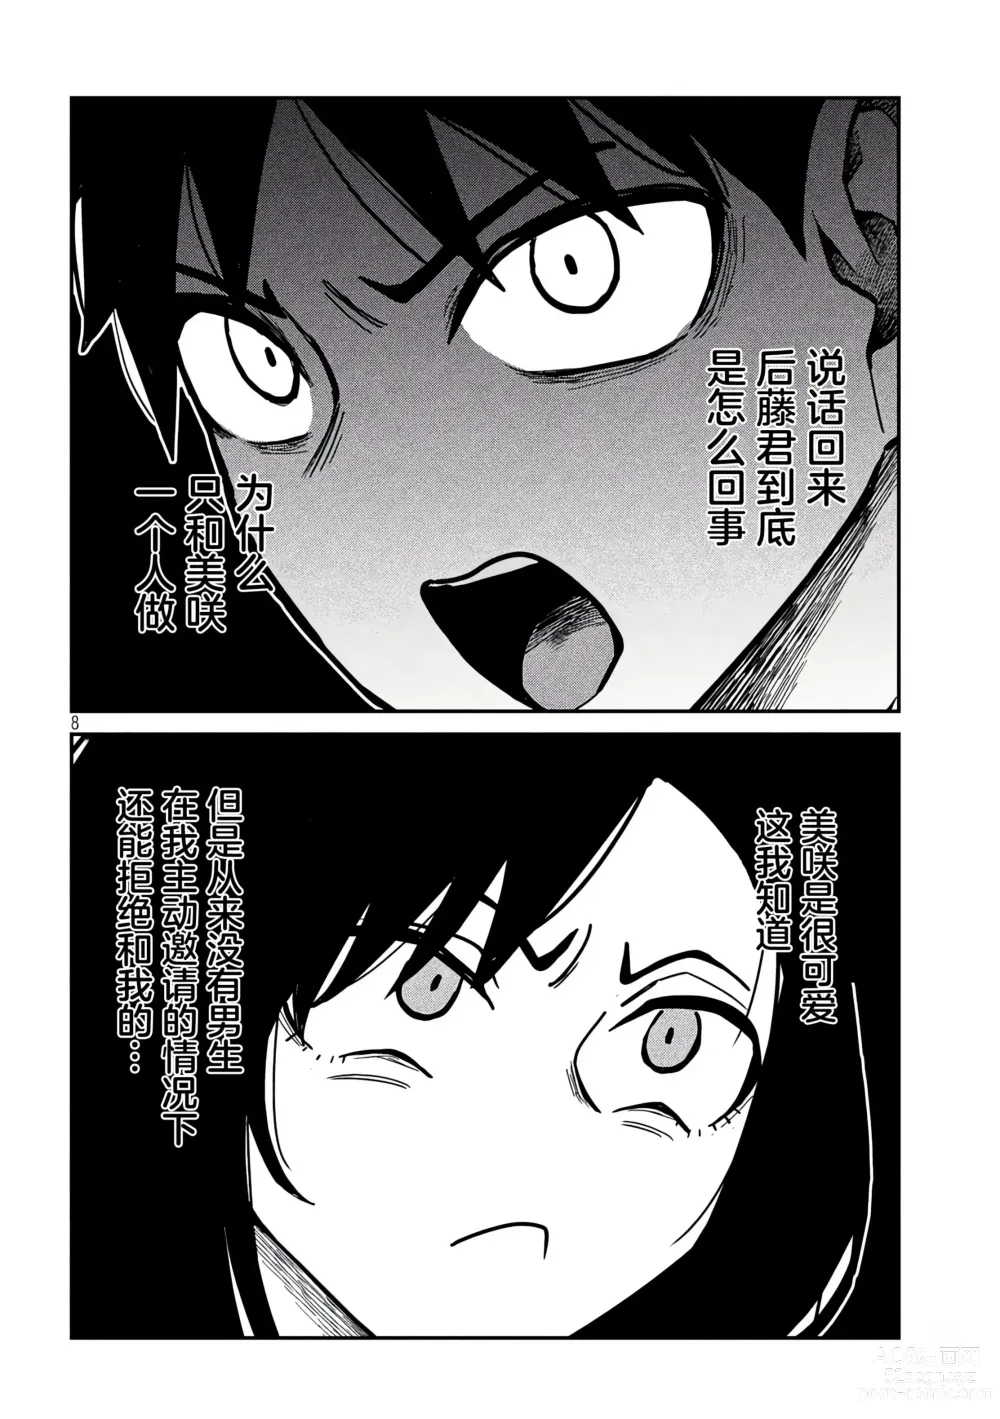 Page 528 of manga 喜欢来者不拒的你